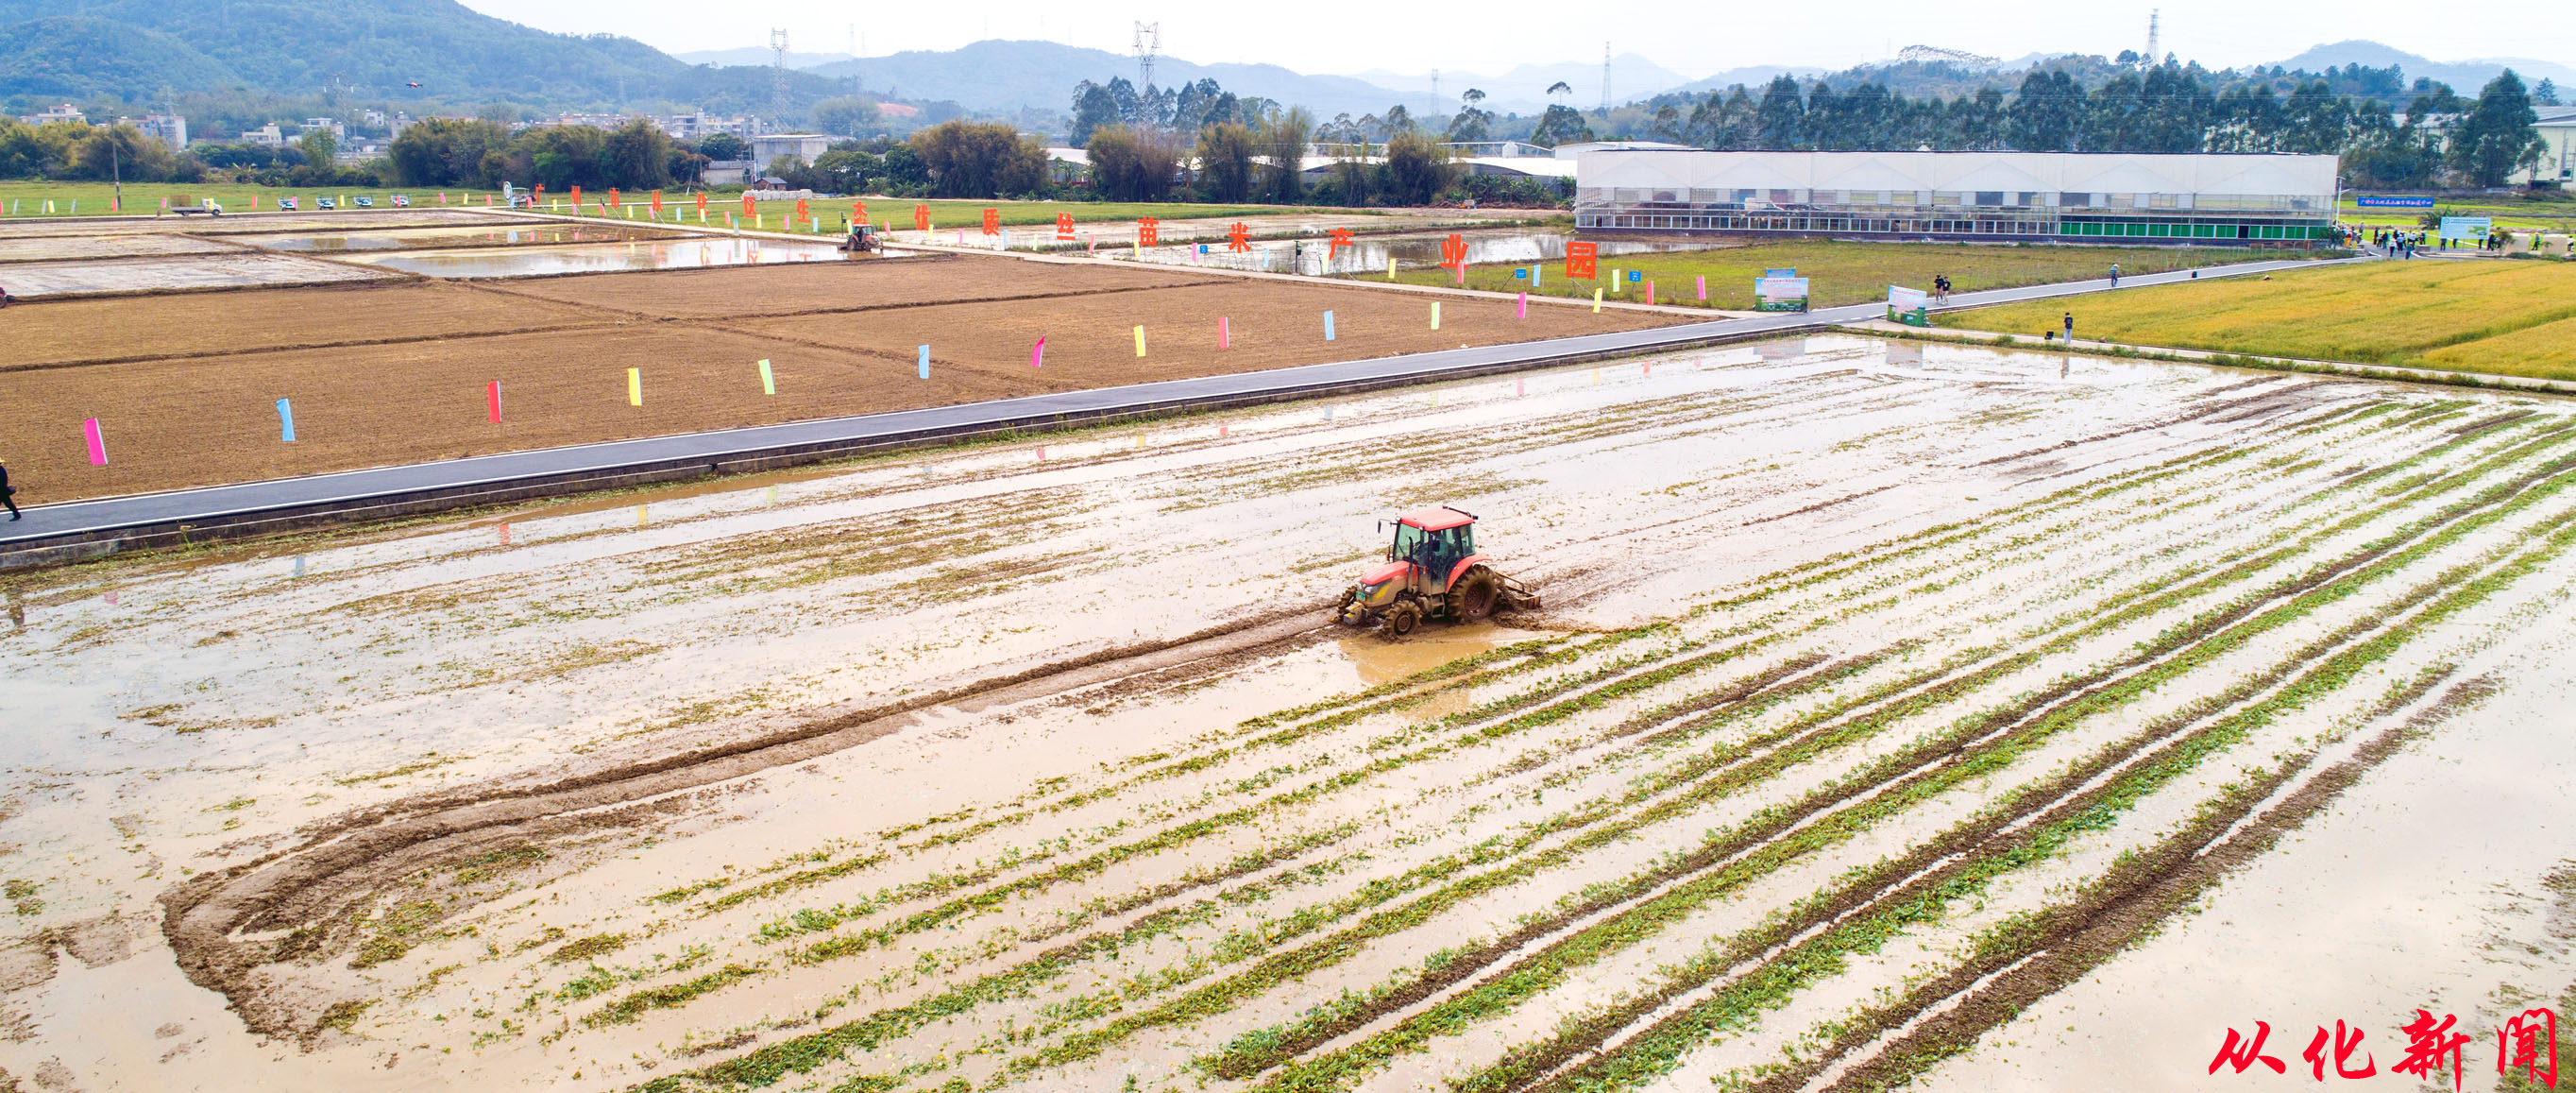 农业机械在田间来回穿梭耕作，奏响科技助力春耕曲。.jpg